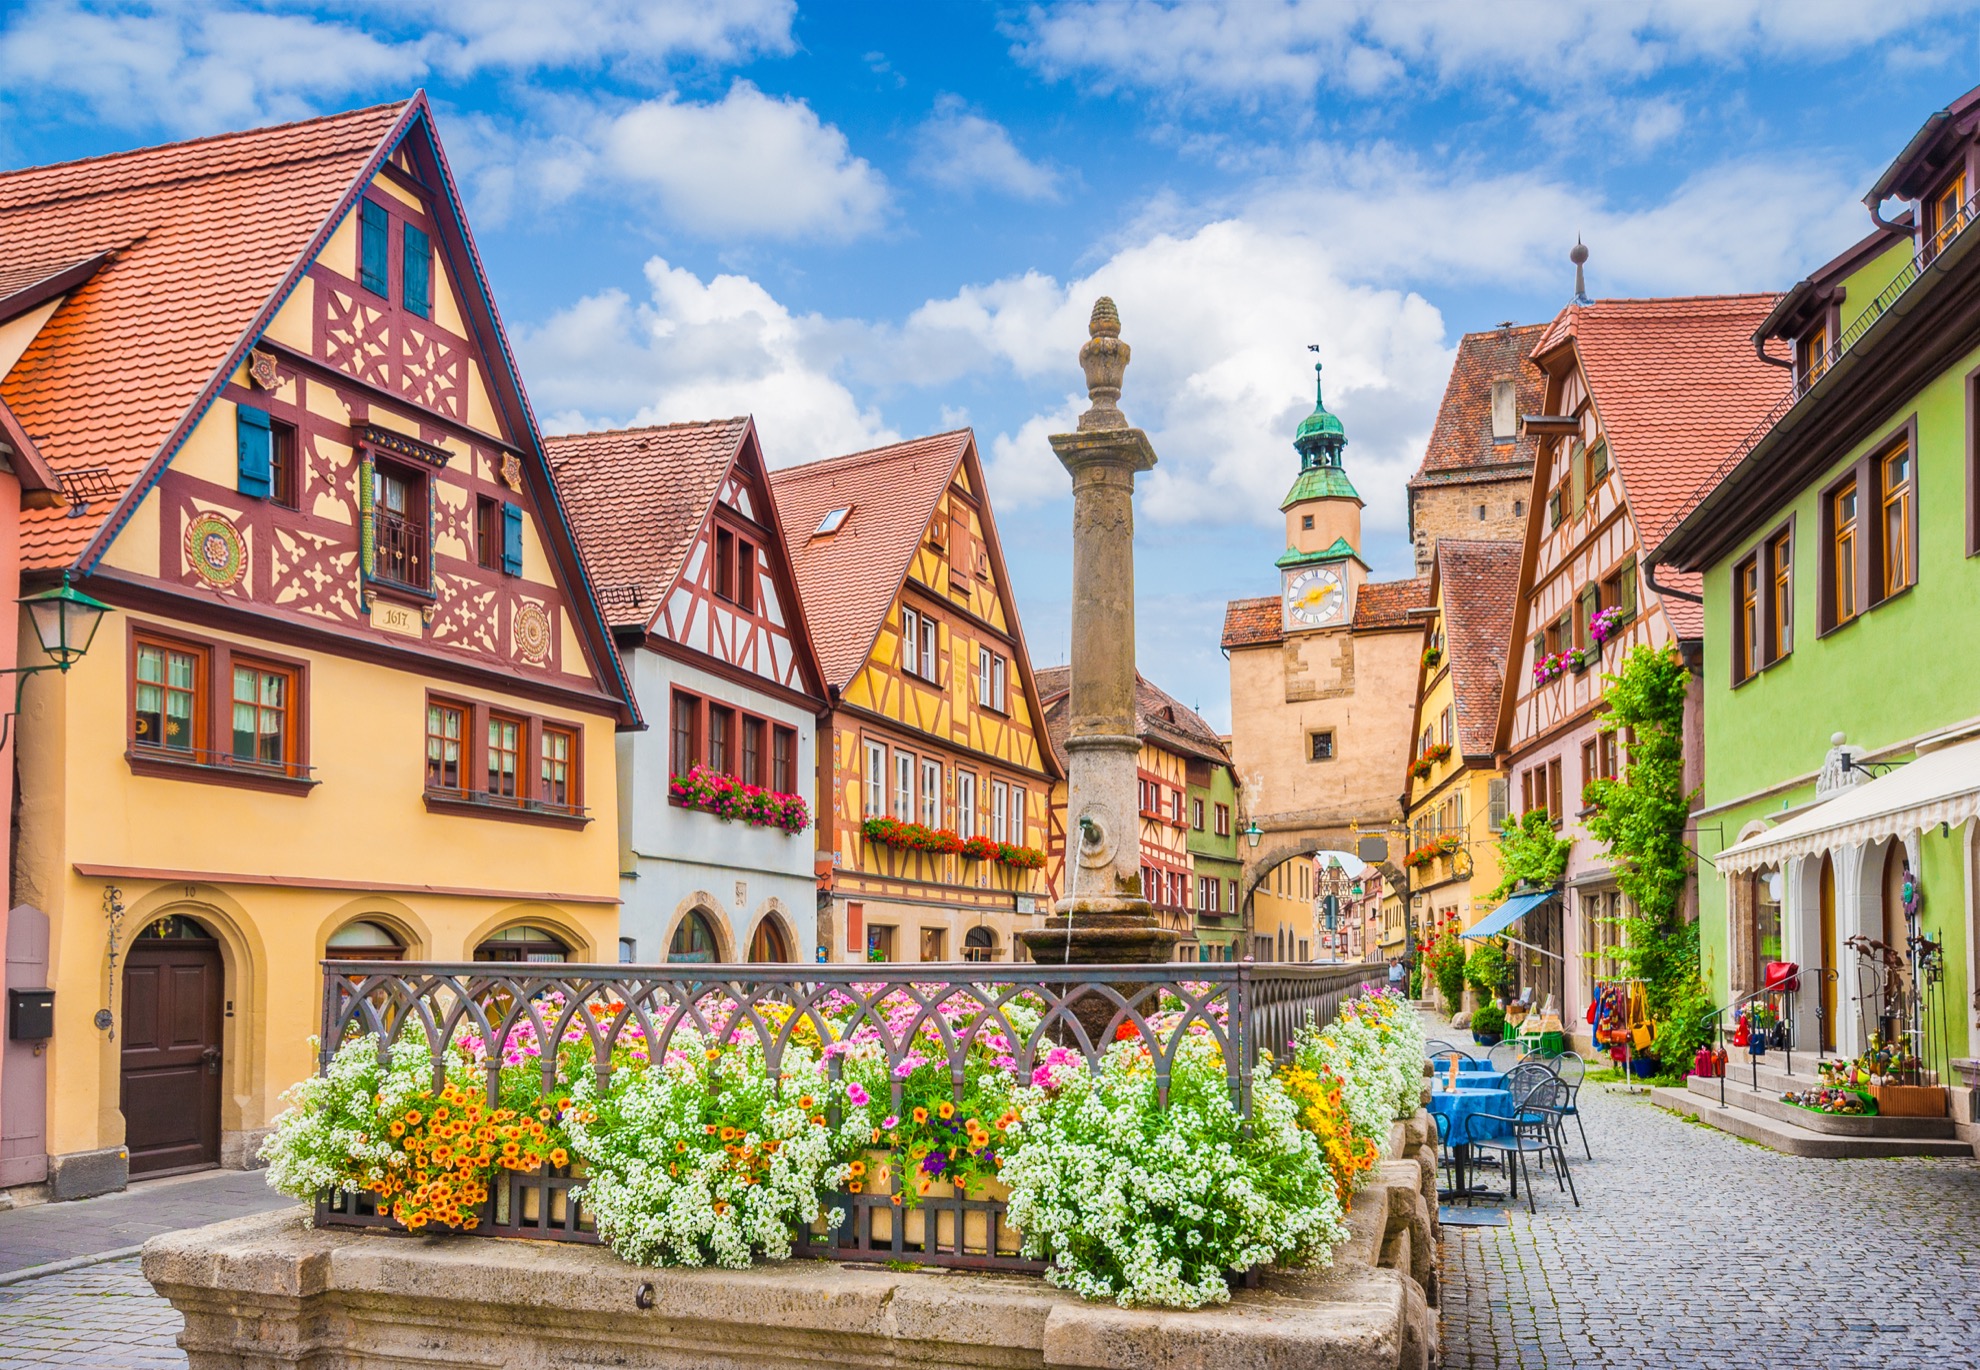 7 cosas rápidas para saber sobre el encantador Rothenburg Ob der Tauber de Alemania - 11